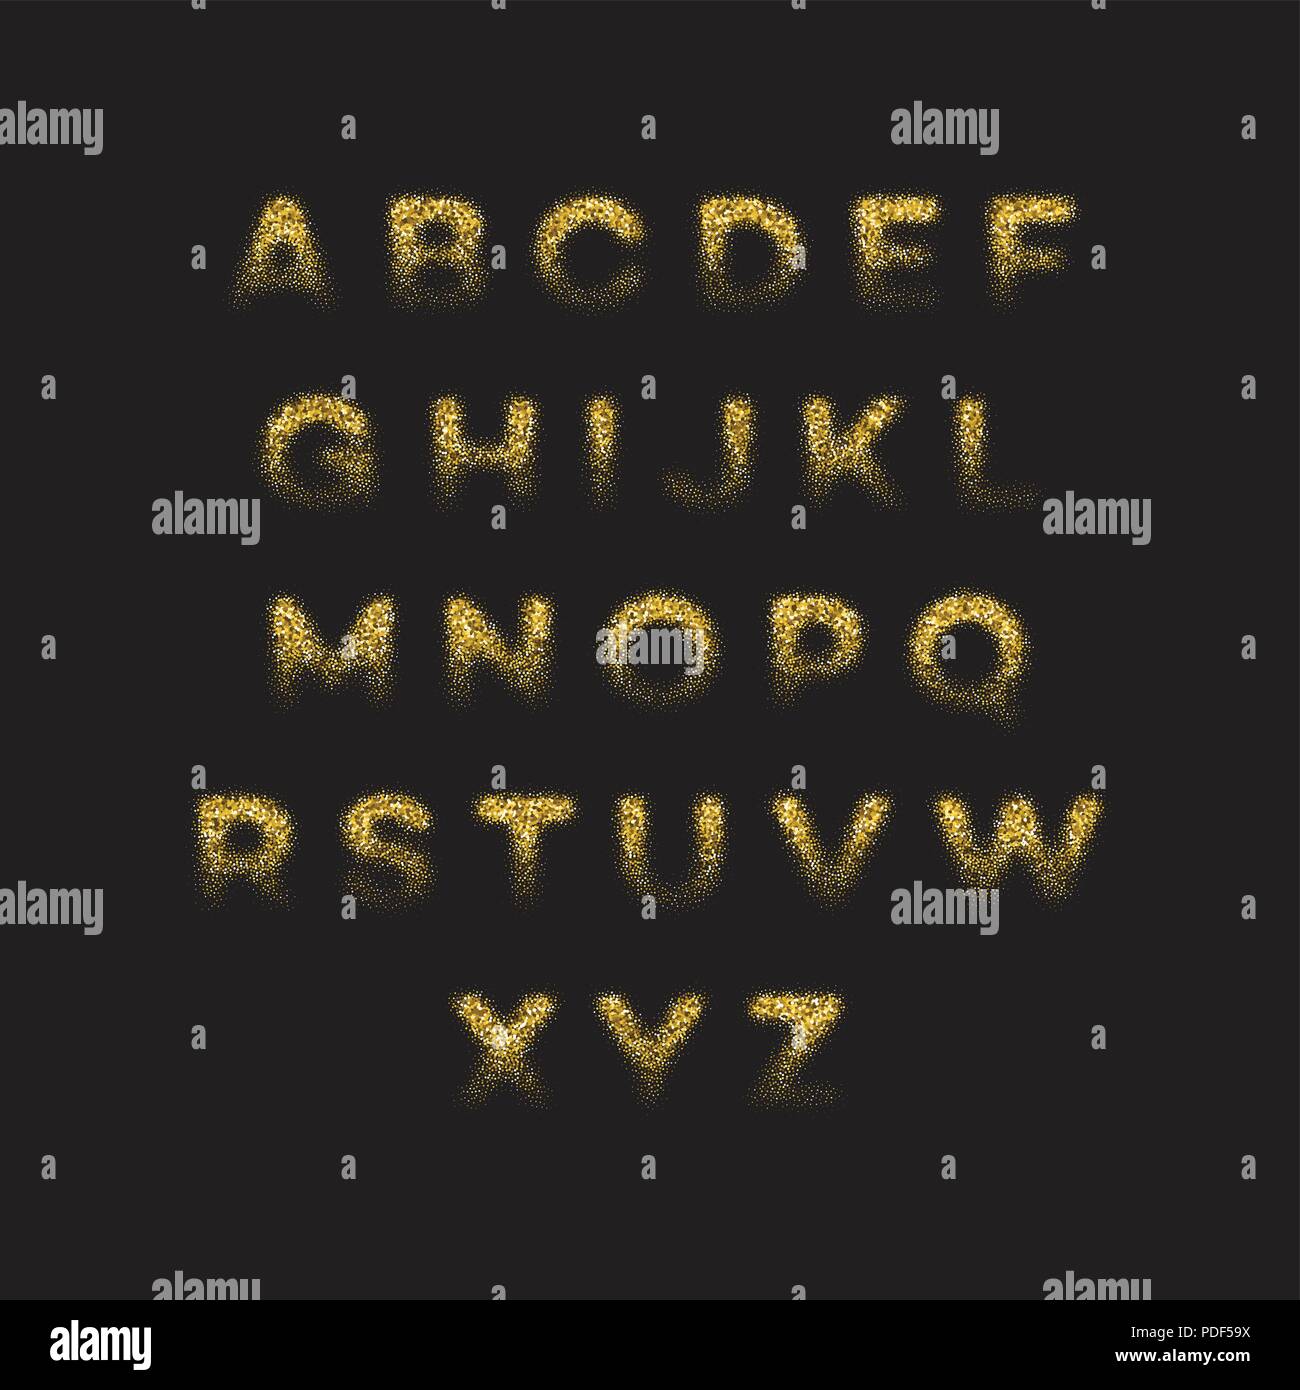 Golden glitter alphabet font set. Vector illustration Stock Vector